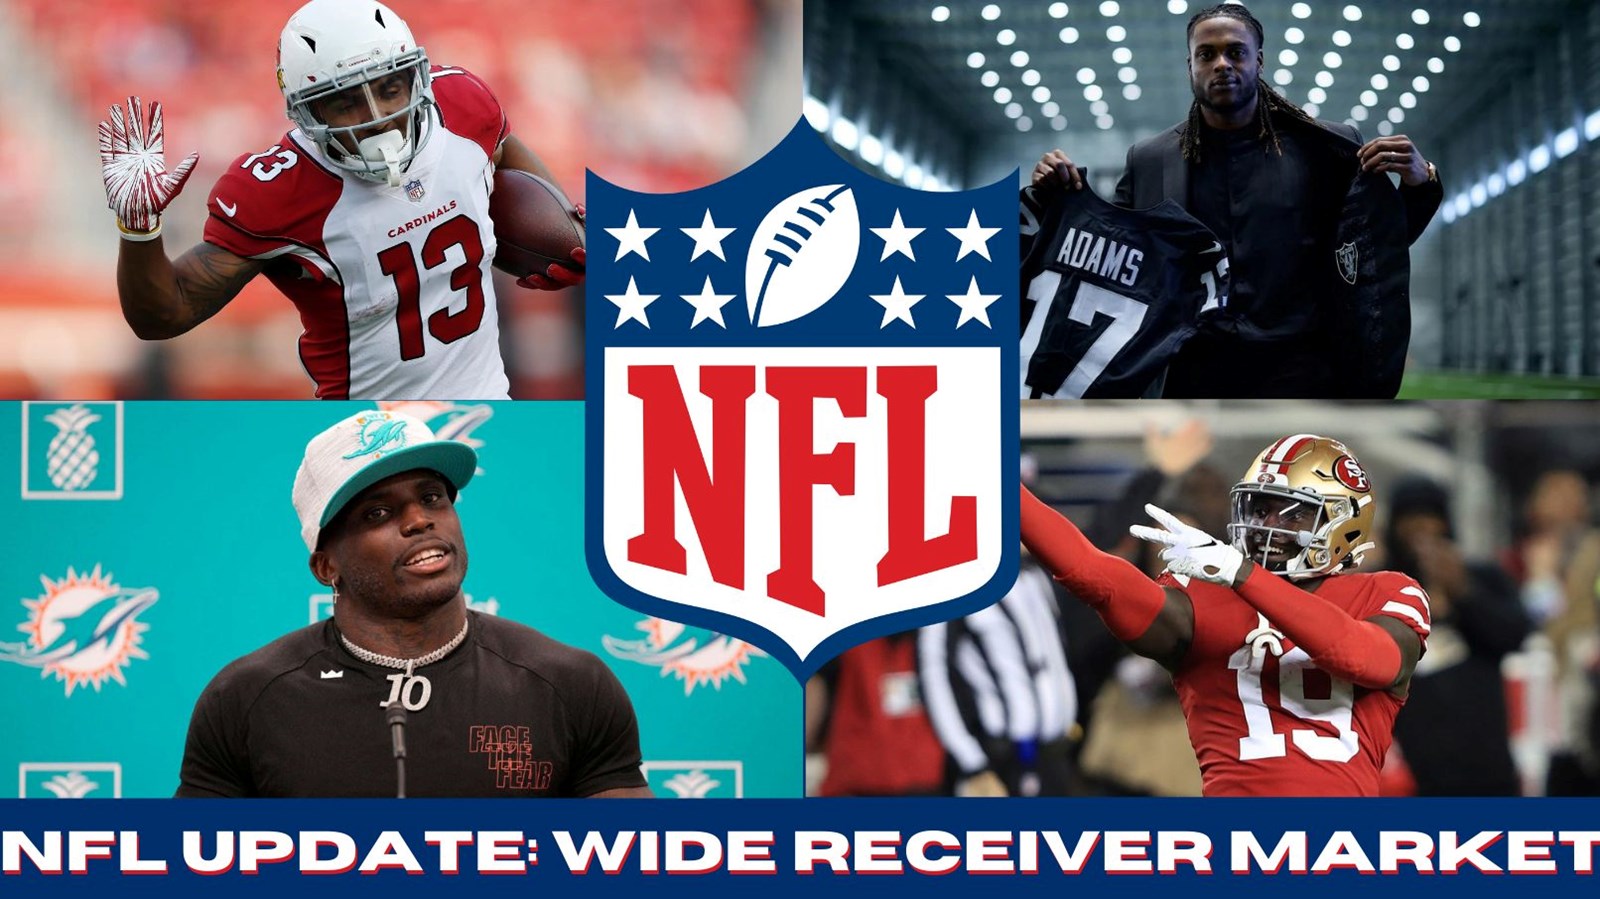 Spotlight Image: NFL Wide Receiver Market